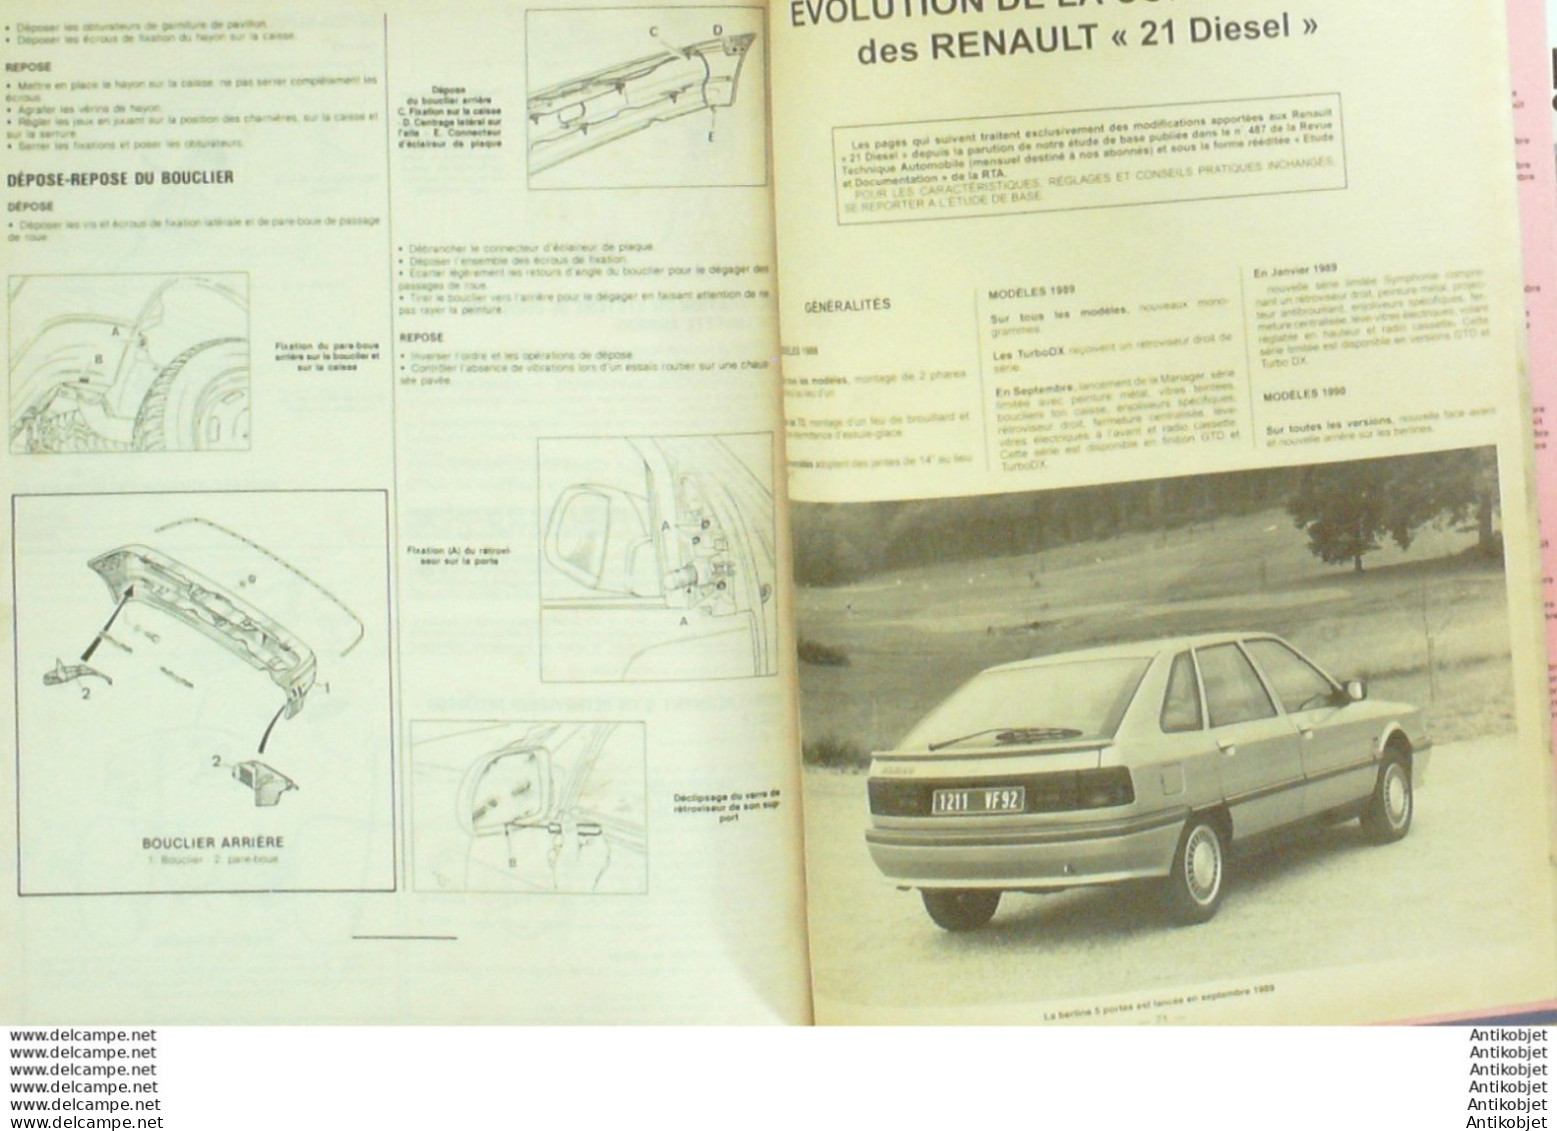 Revue Technique Automobile Renault Clio & 21 Peugeot 106 Citroen ZX   N°534 - Auto/Moto